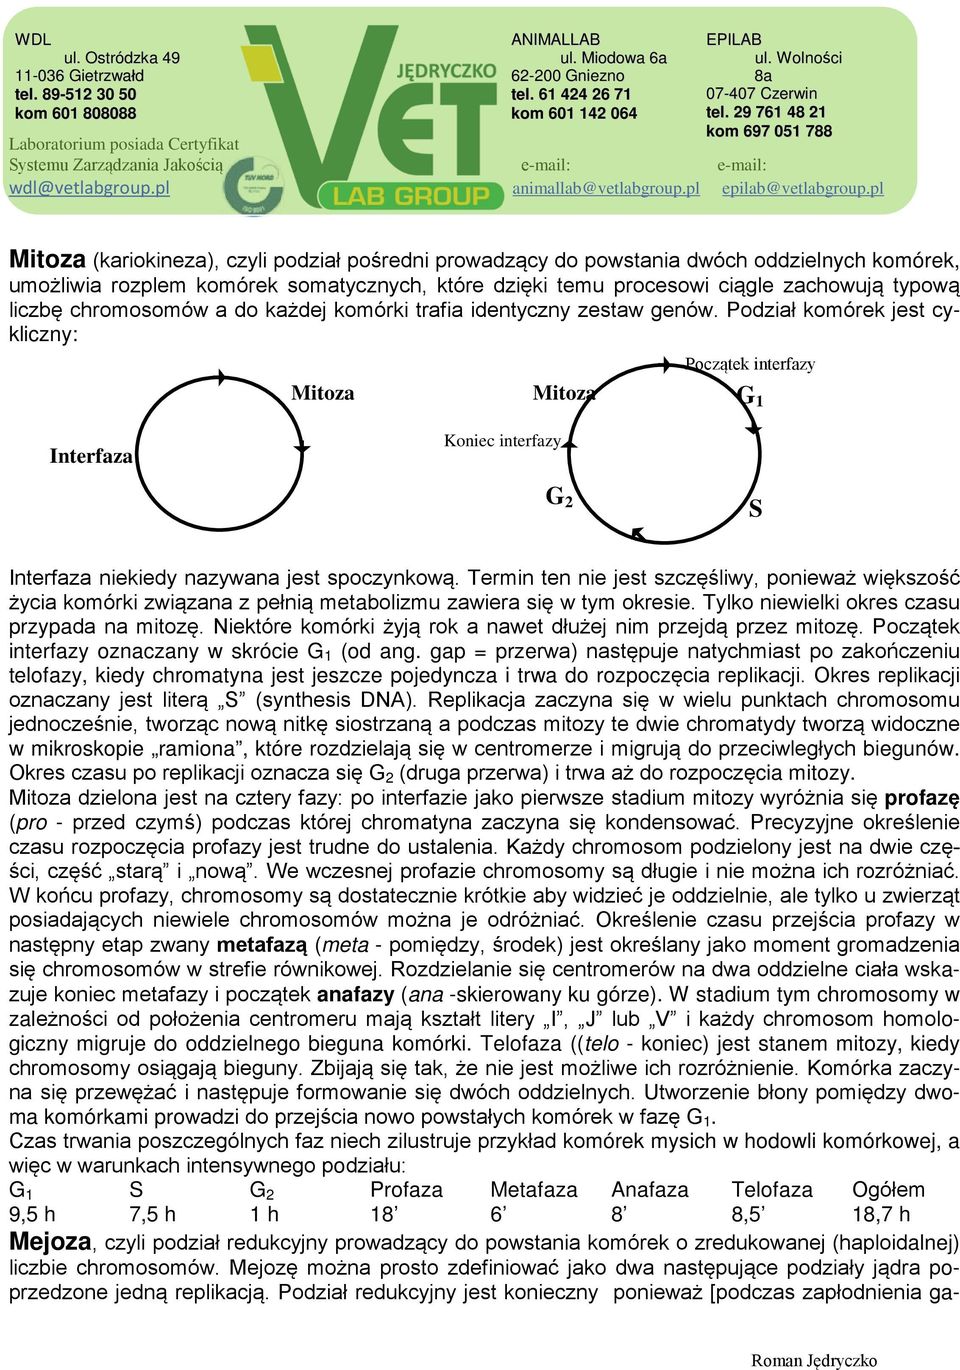 Podział komórek jest cykliczny: Mitoza Początek interfazy Mitoza G 1 Interfaza Koniec interfazy G 2 S Interfaza niekiedy nazywana jest spoczynkową.